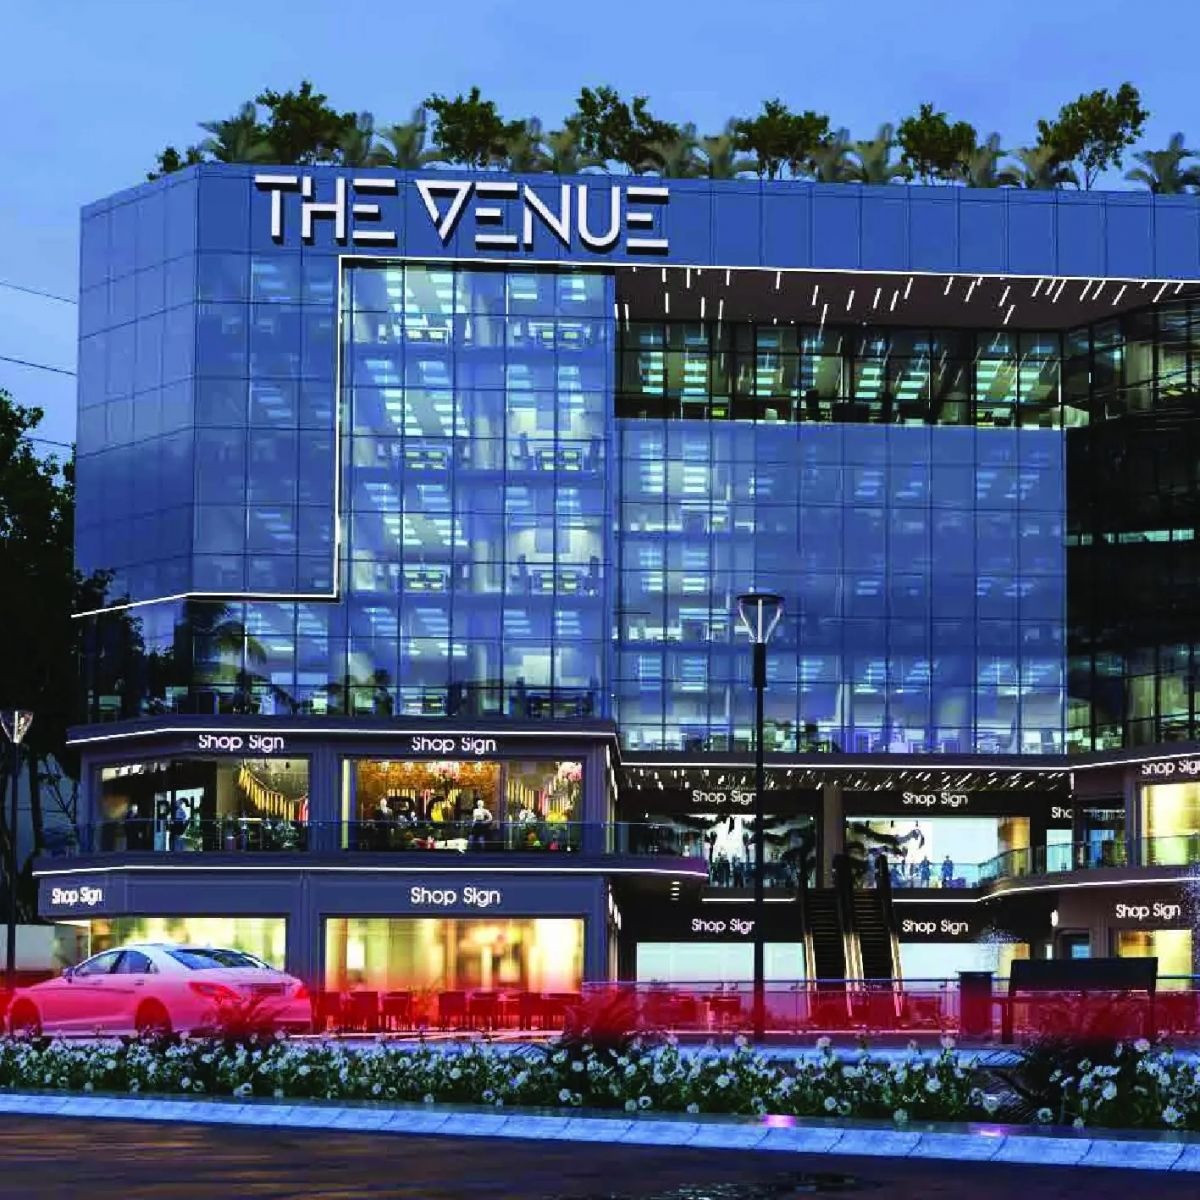 The Venue Mall New Cairo